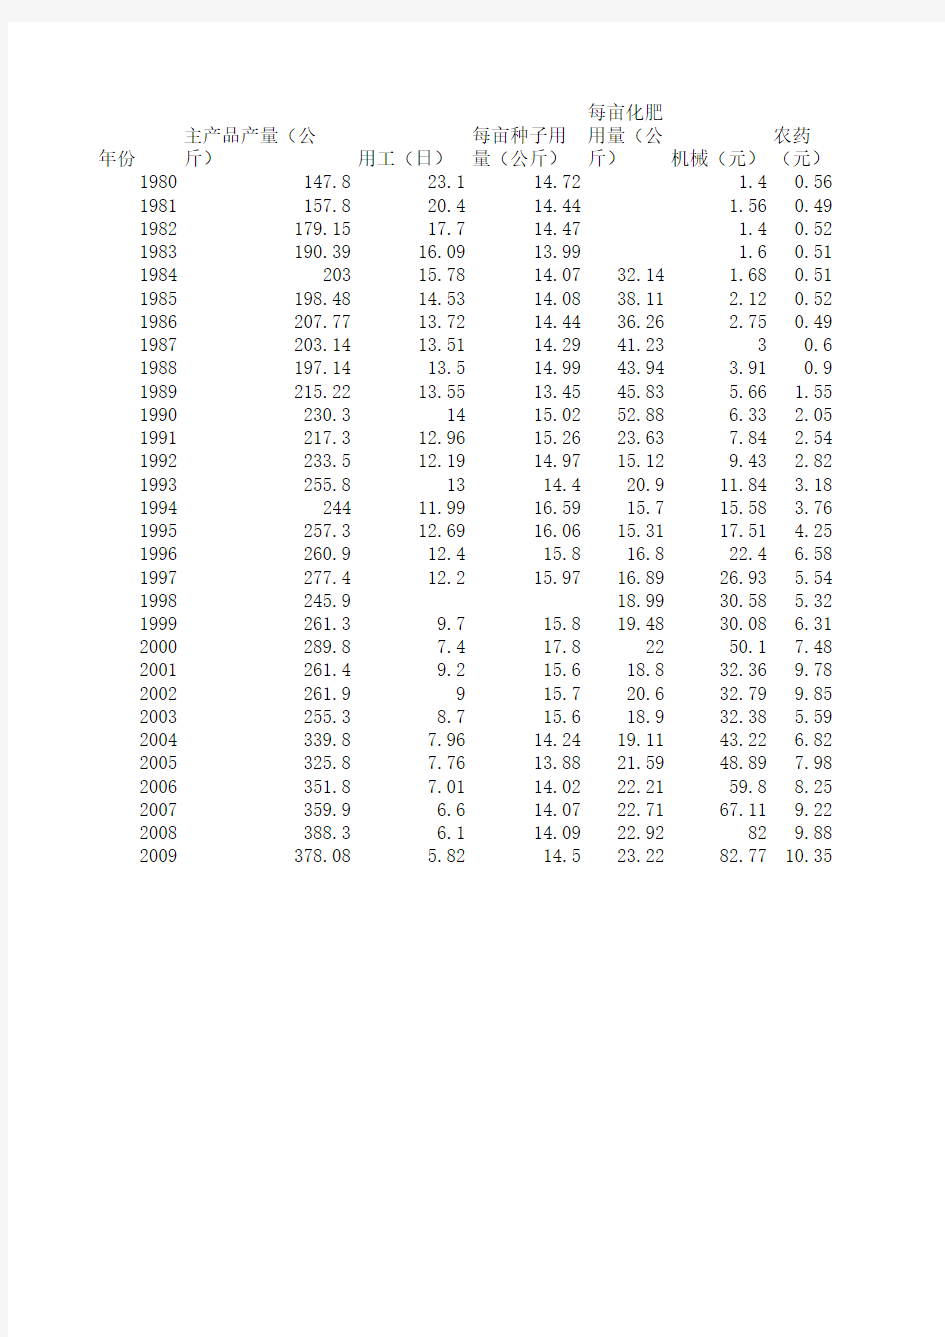 农作物成本收益汇总(1980-2009年全国数据)